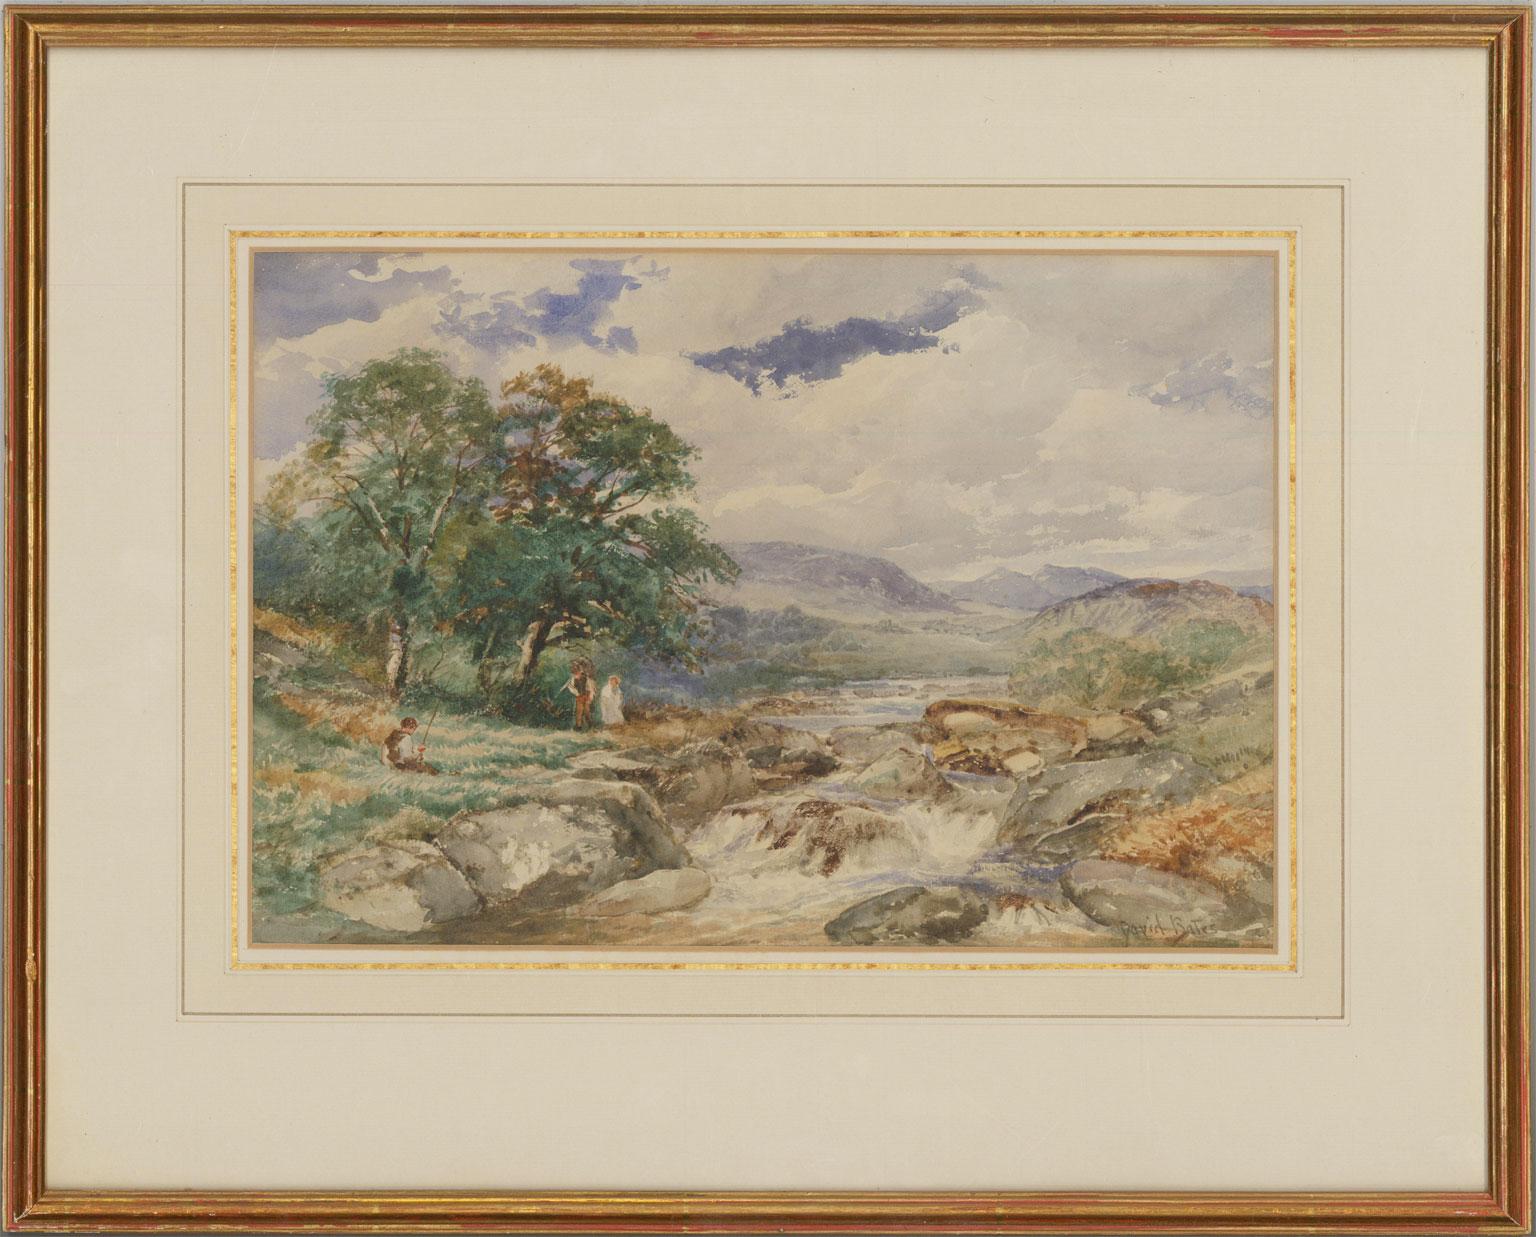 Unknown Landscape Art - David Bates (1840-1921) - Fine Watercolour, On the Machno River, North Wales